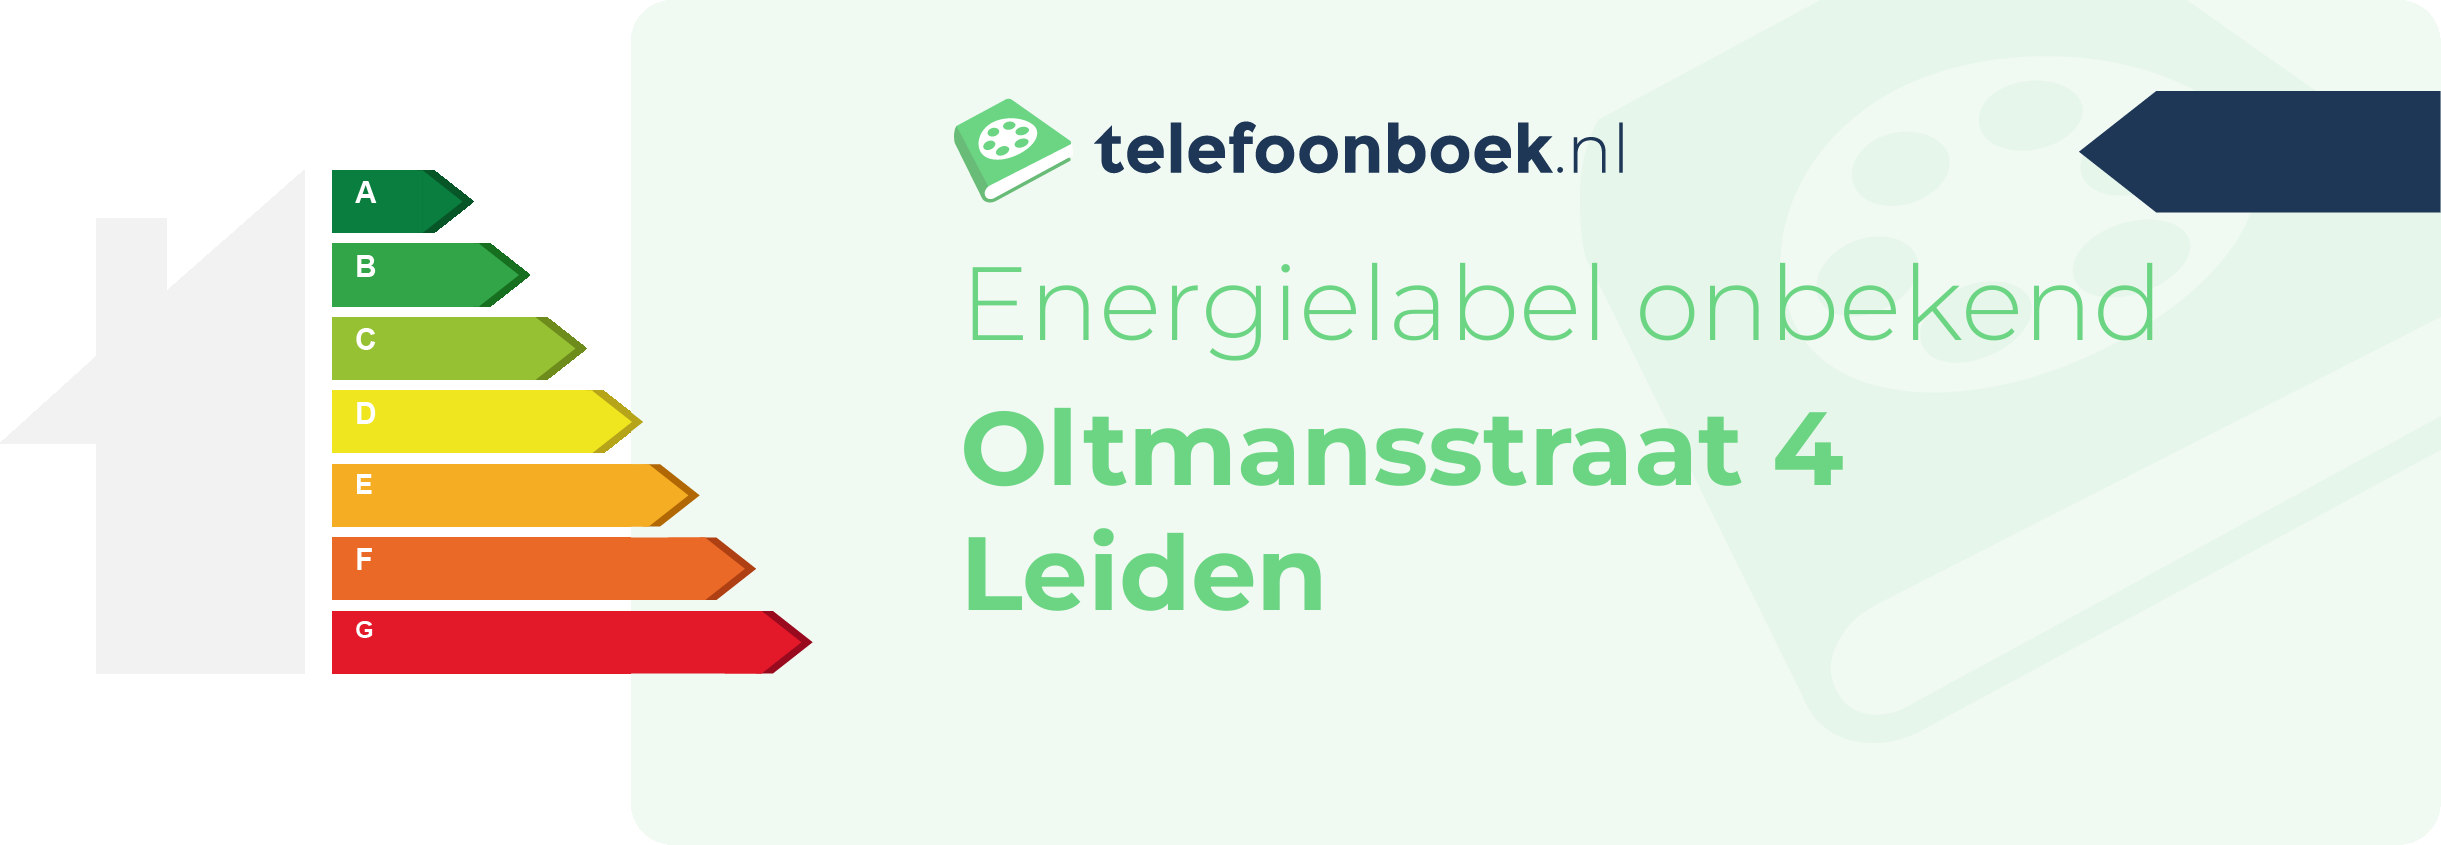 Energielabel Oltmansstraat 4 Leiden